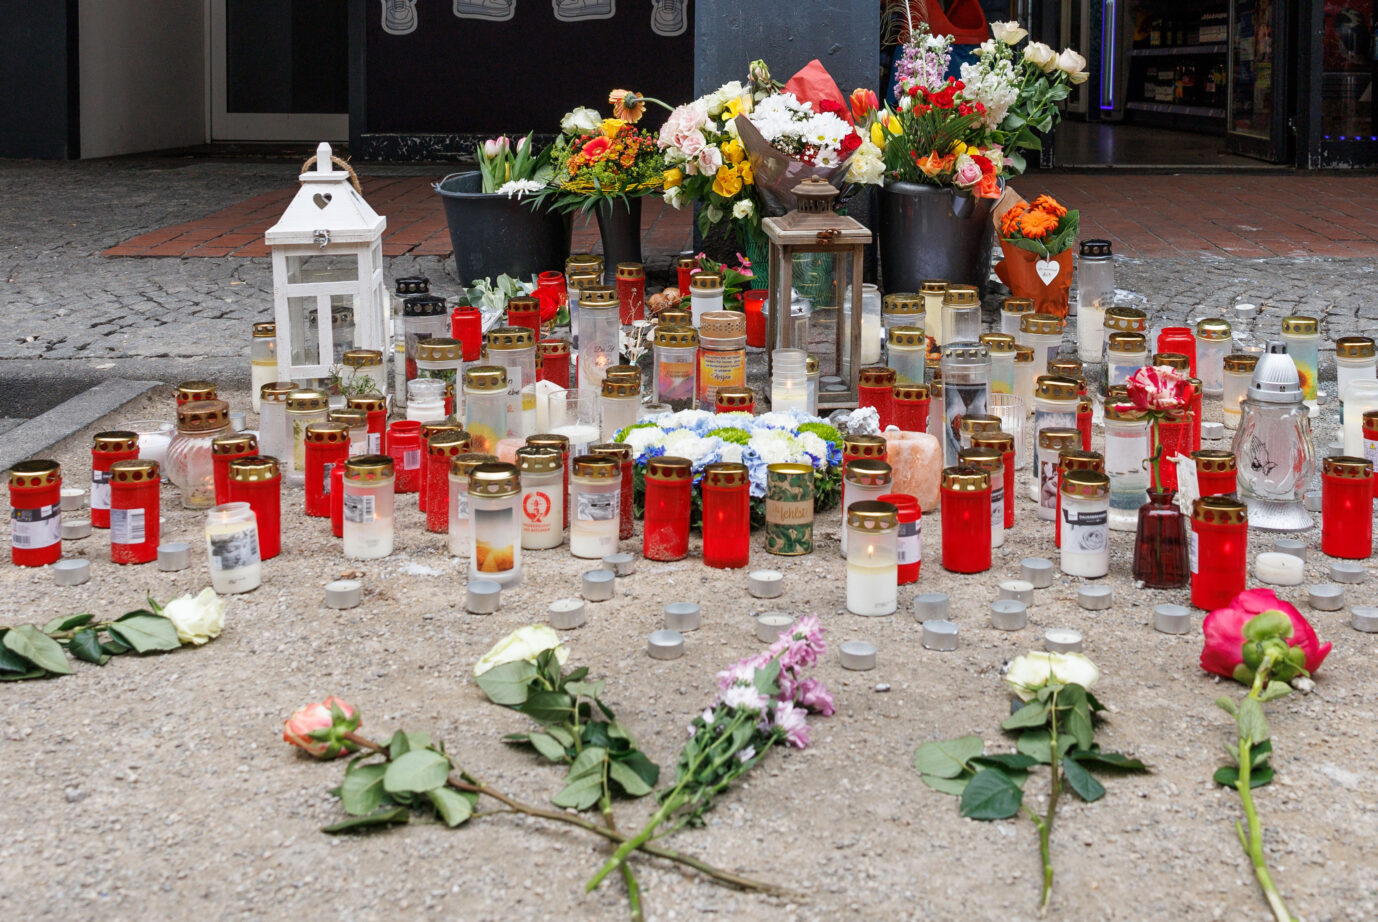 Der Tatort in Paderborn – Trauernde haben Blumen und Kerzen niedergelegt